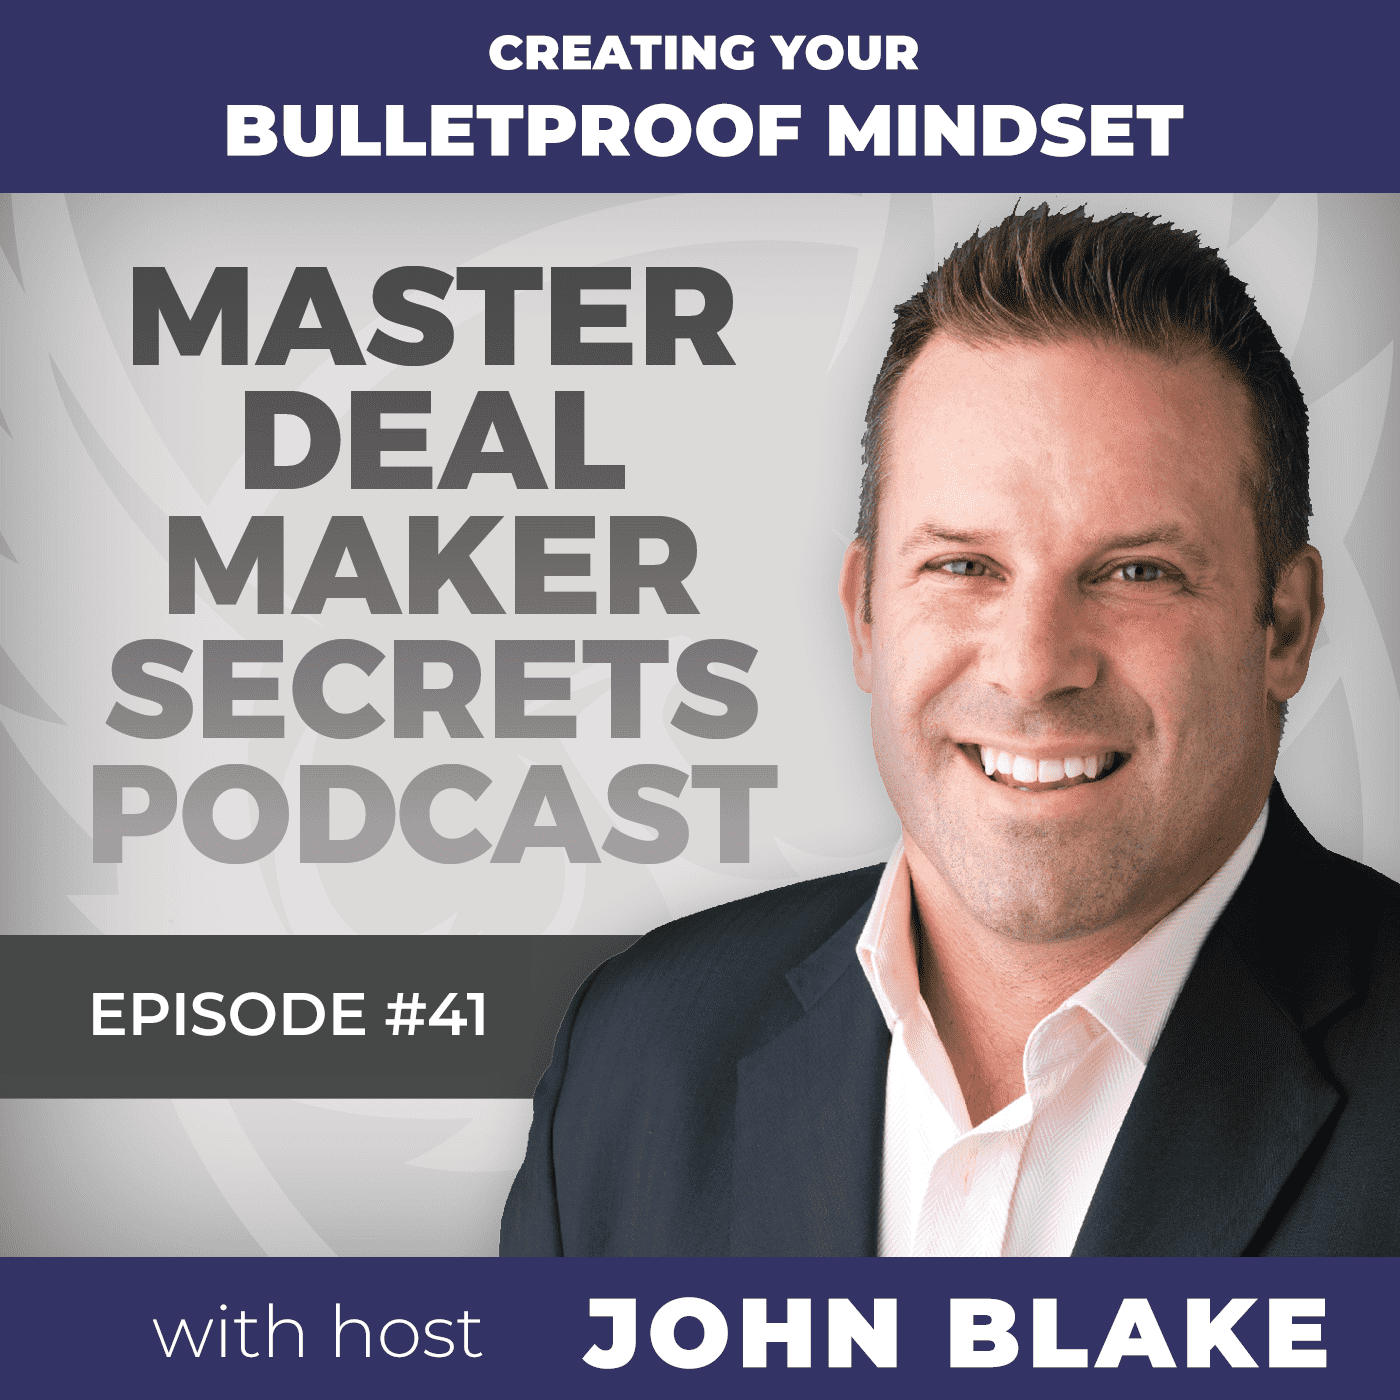 John Blake - Creating Your Bulletproof Mindset